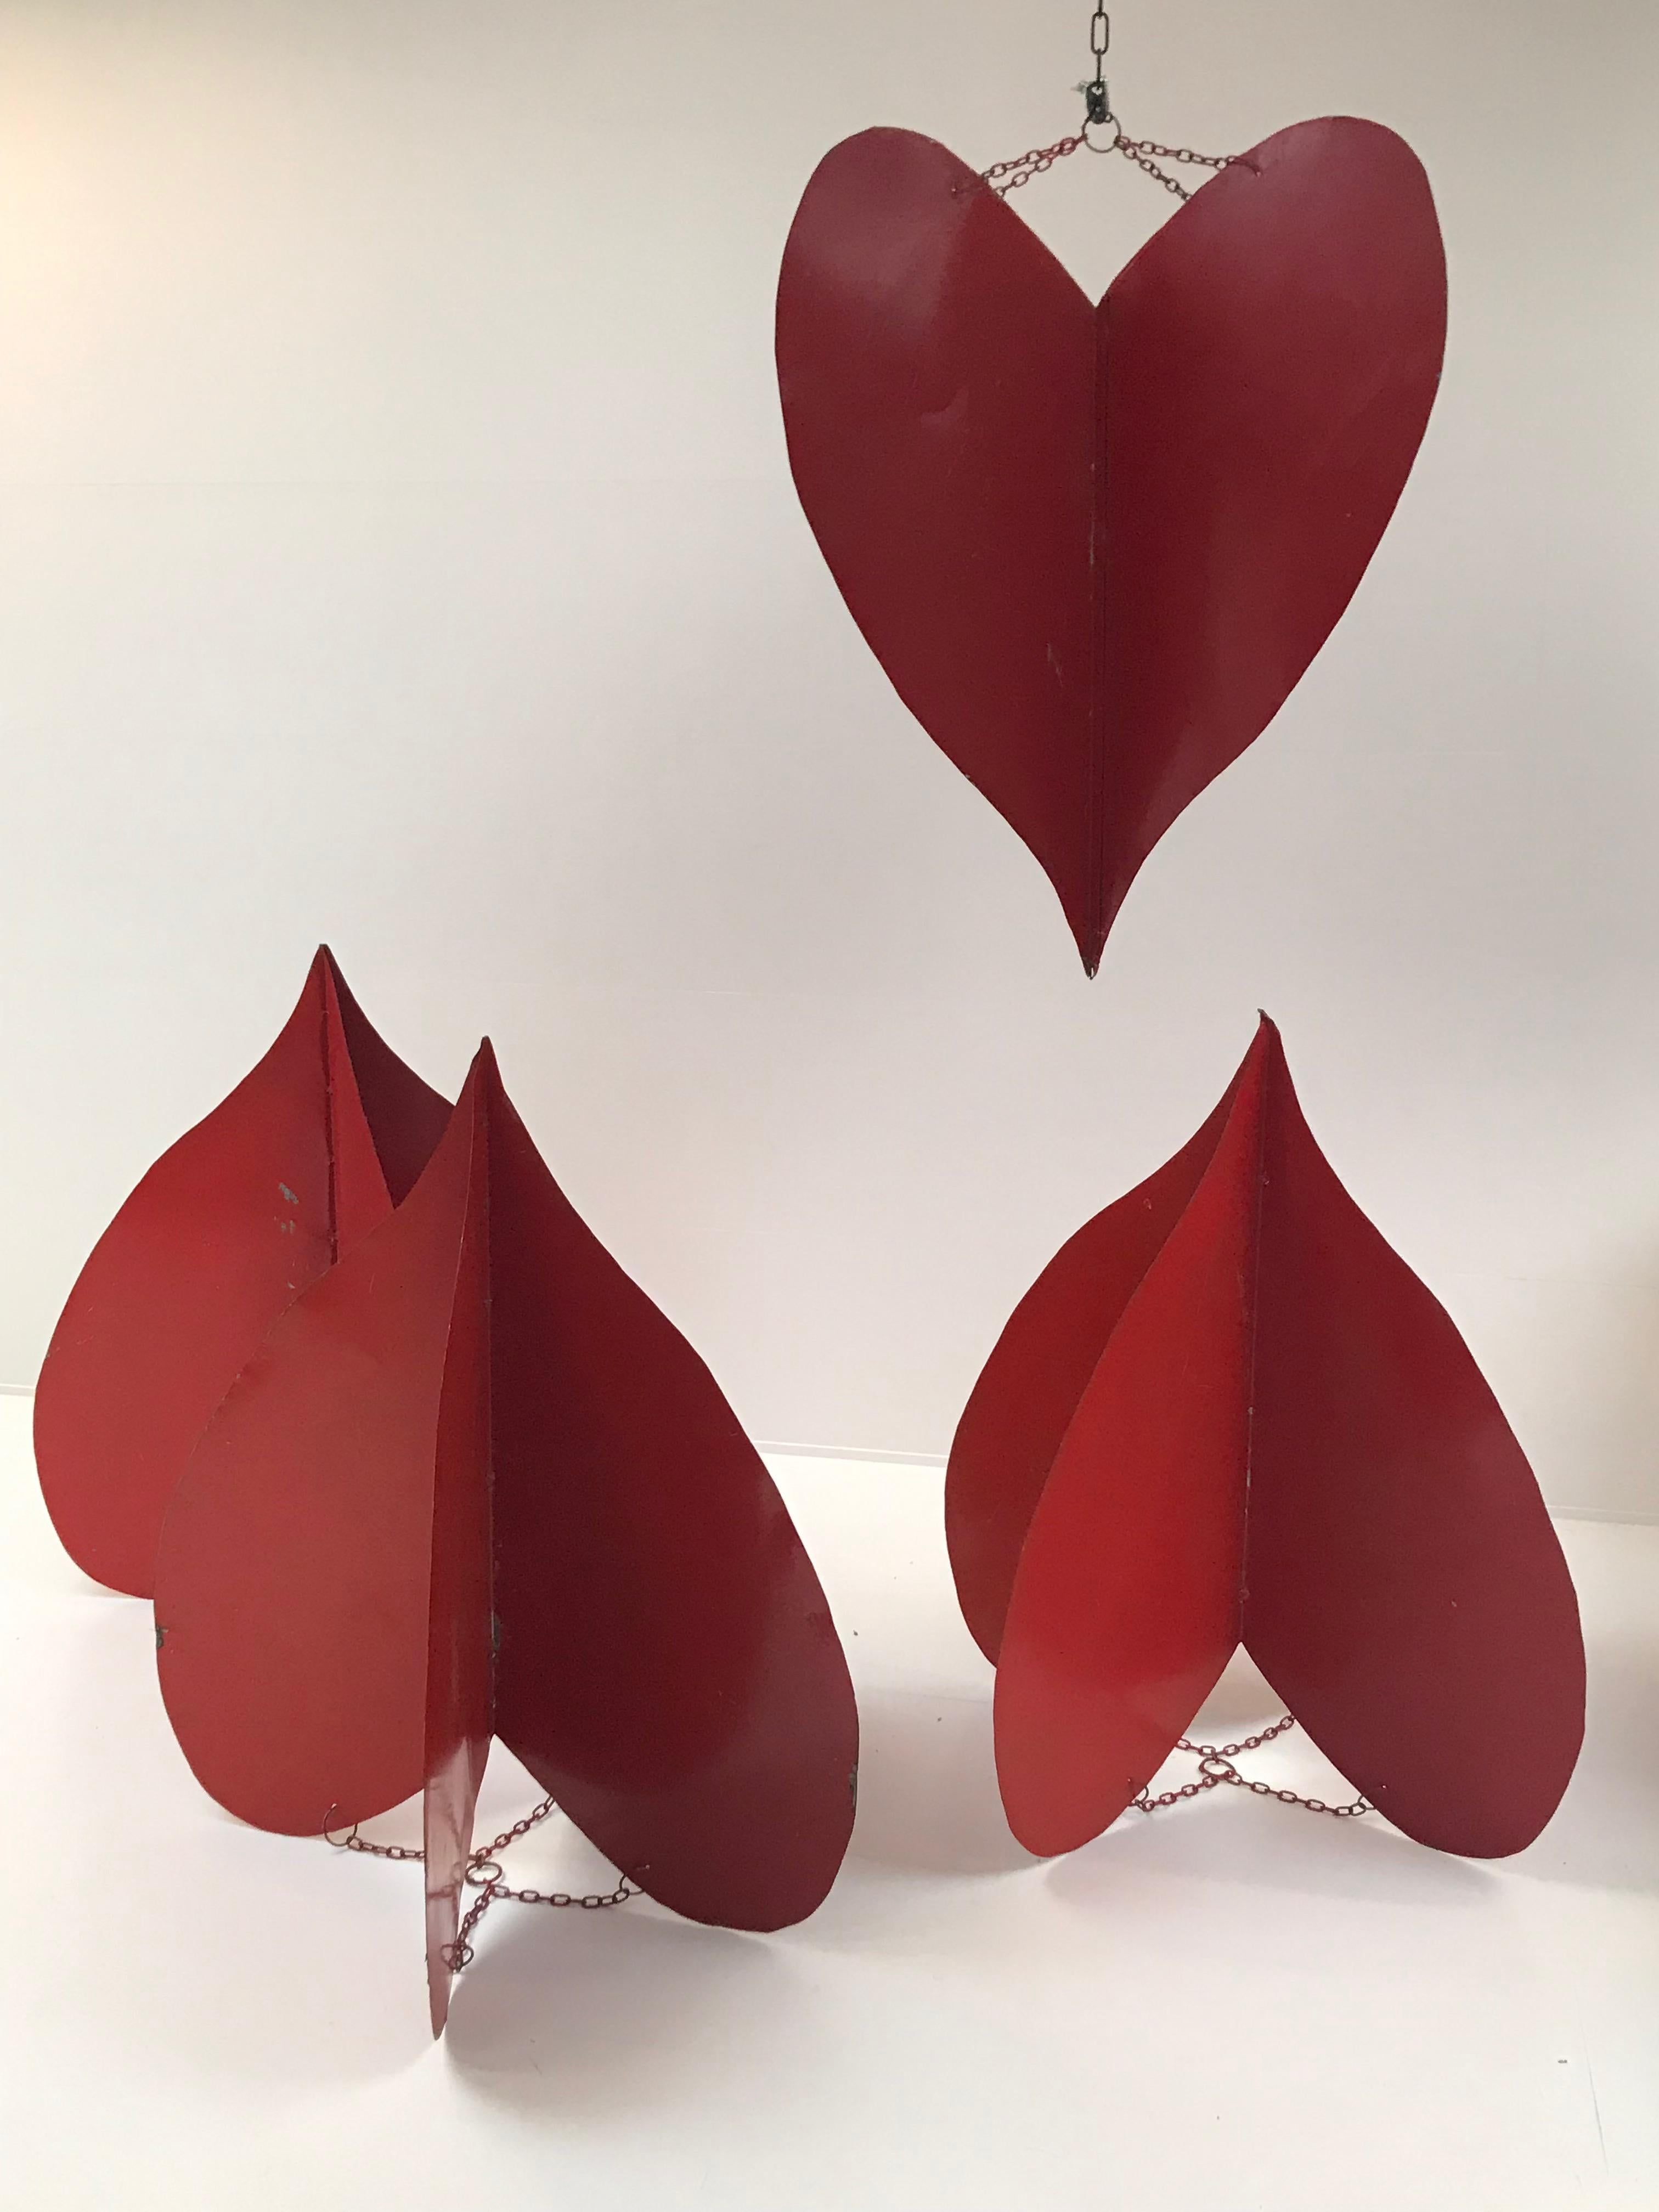 Schöner Satz von 4 dekorativen Herzen in Eisen rot lackiert.